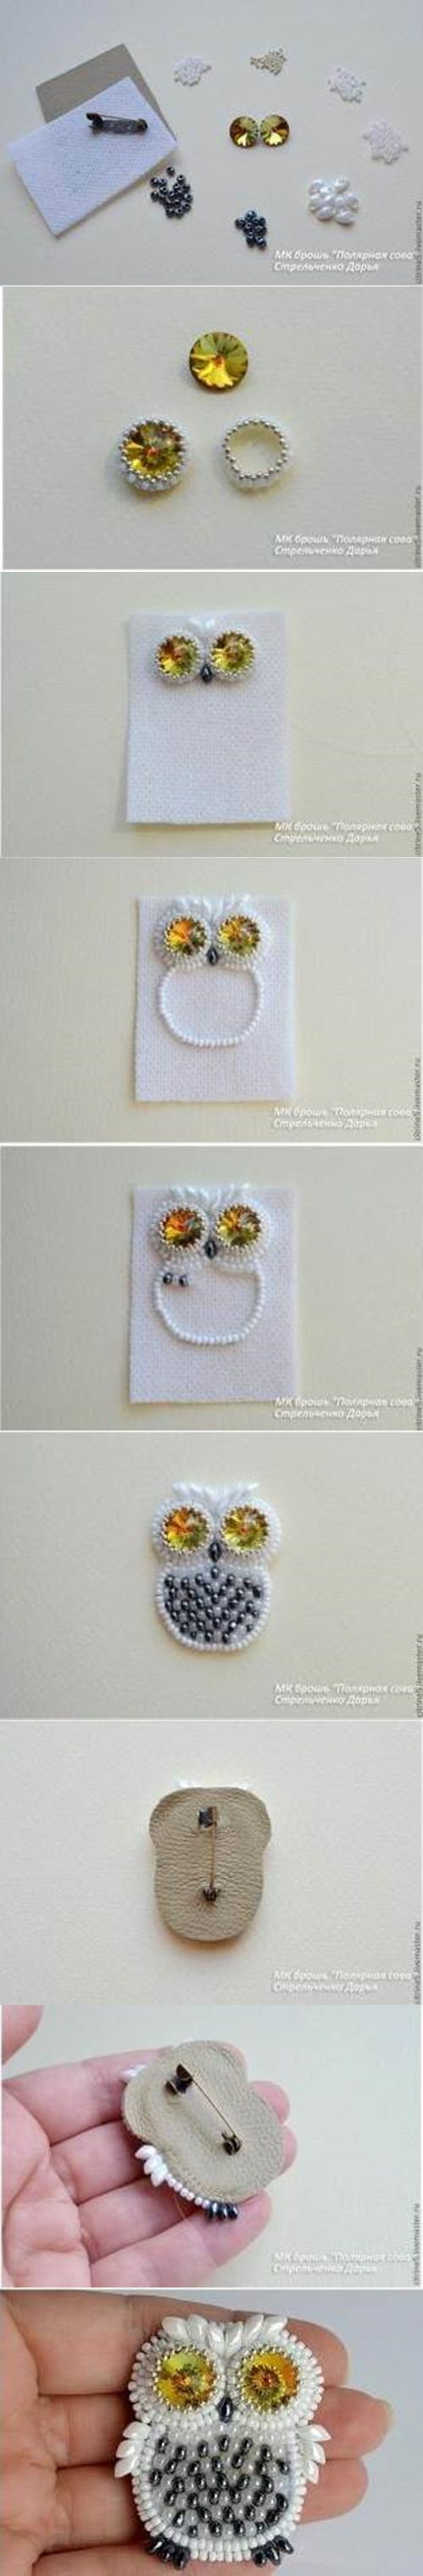 DIY Beads Owl Pin